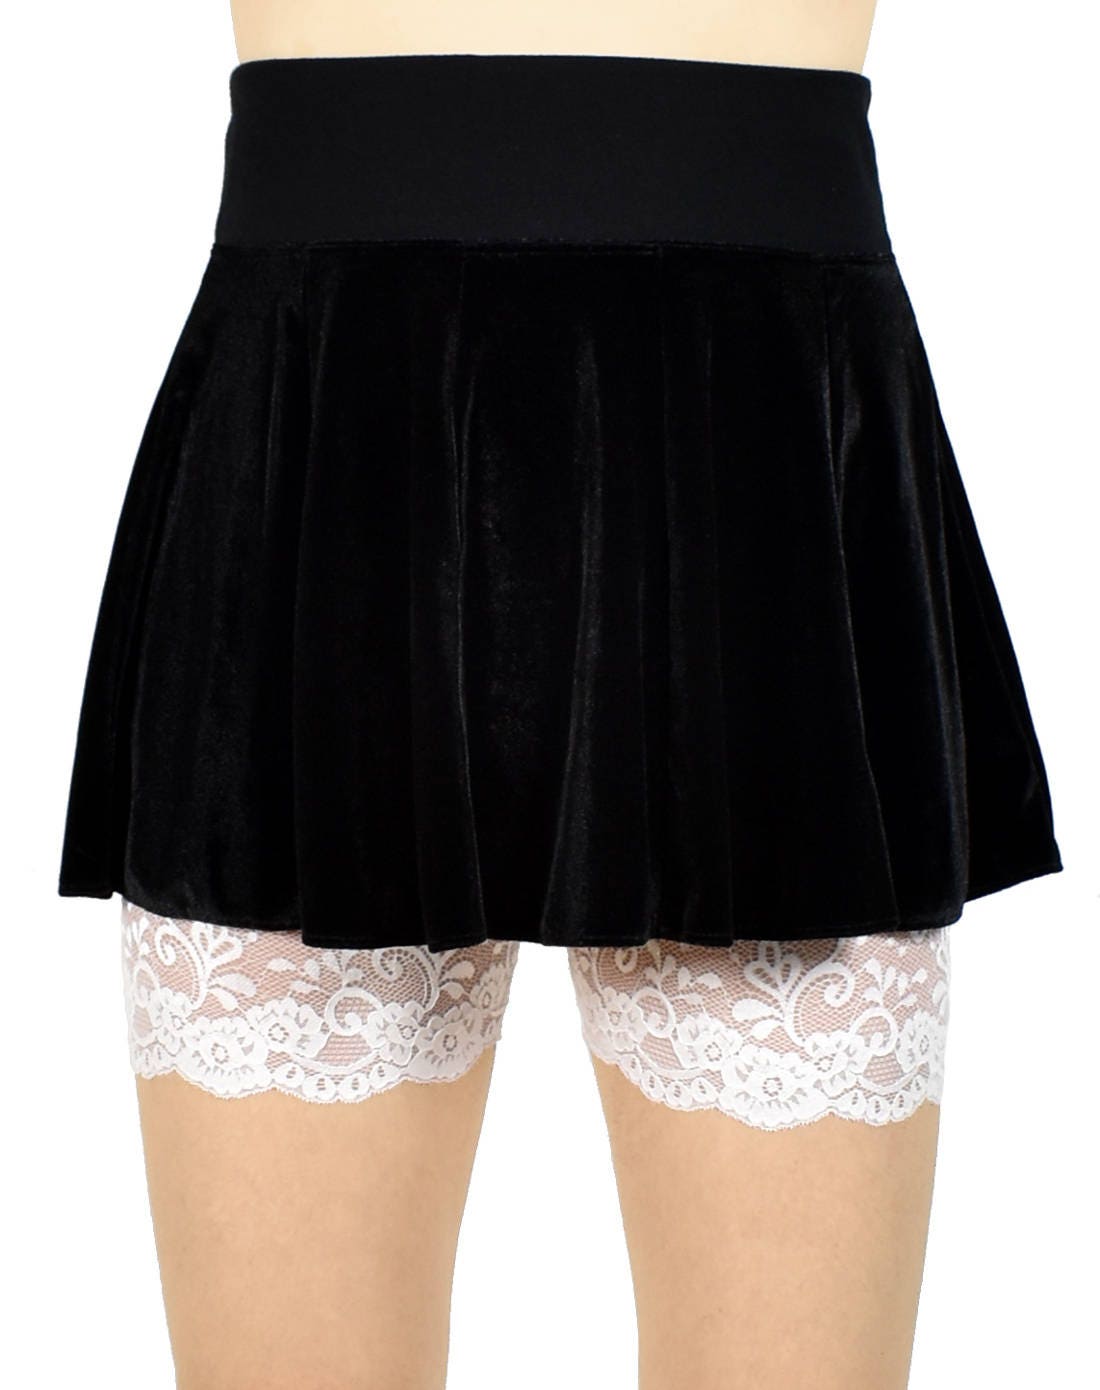 Ivory or White Lace Leg Shorts XS S M L XL 2XL 3XL plus size | Etsy